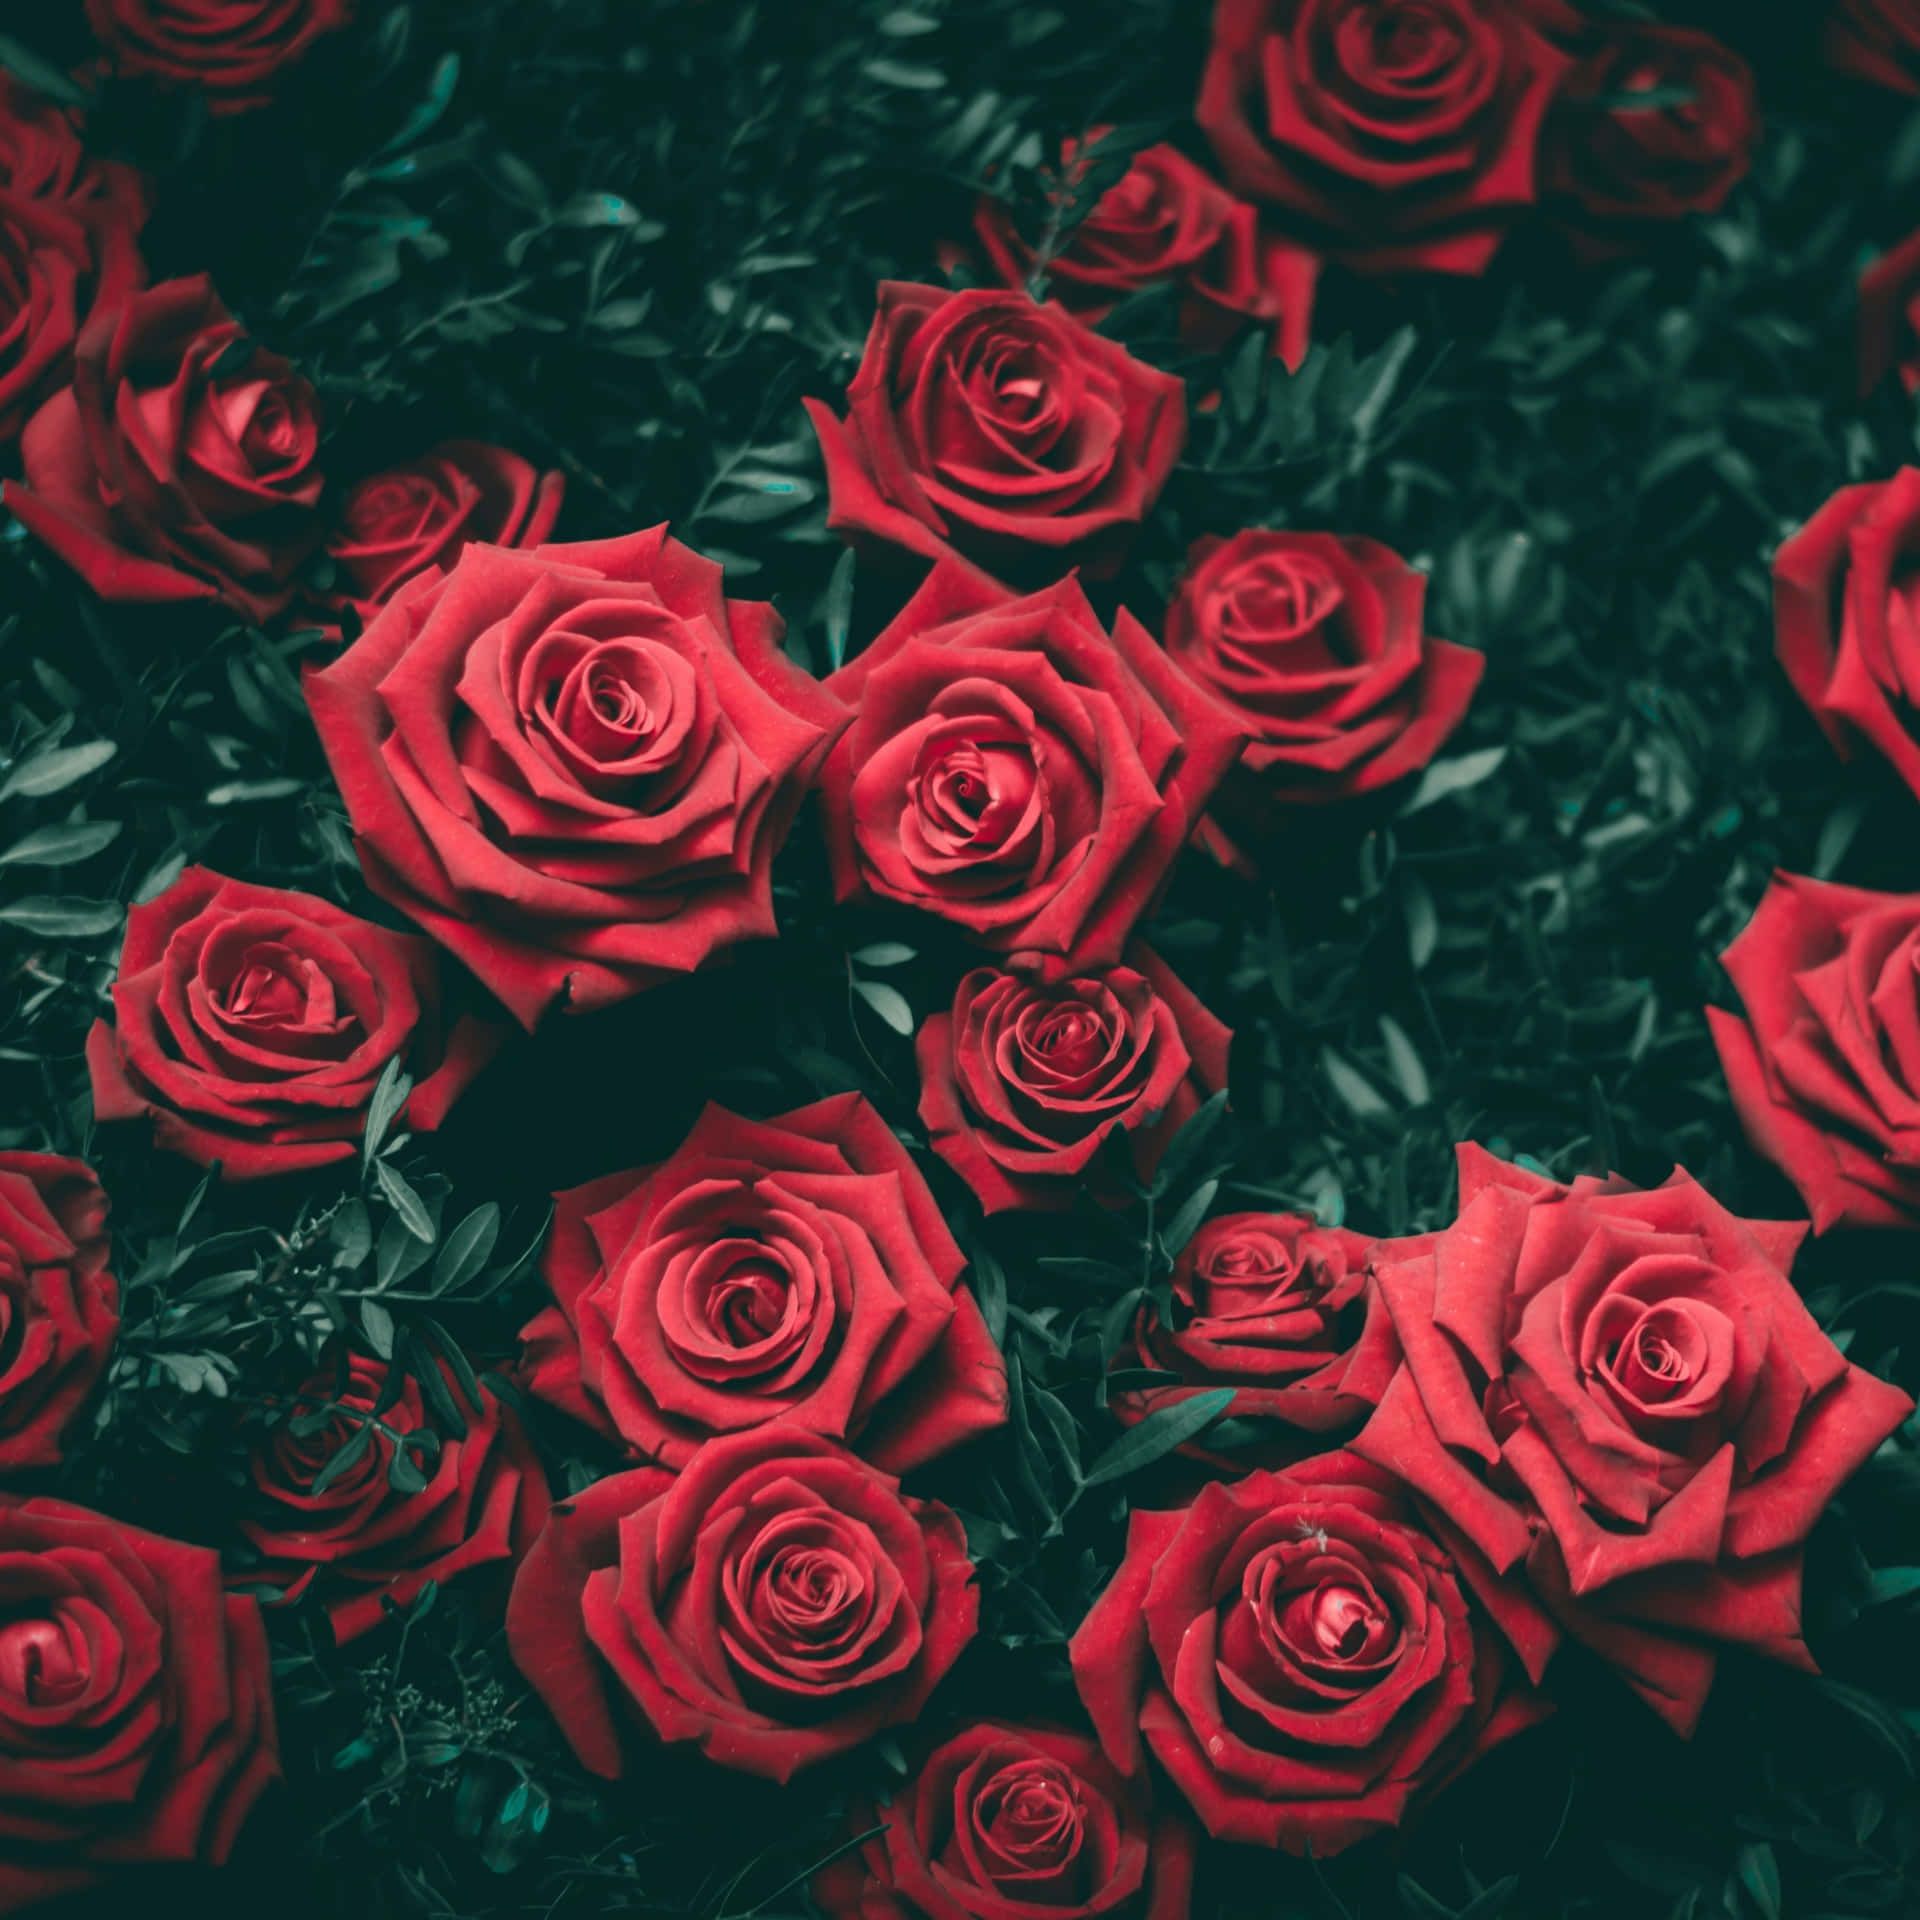  Rote Rosen Hintergrundbild 1920x1920. Hintergrund Mit Roten Rosen